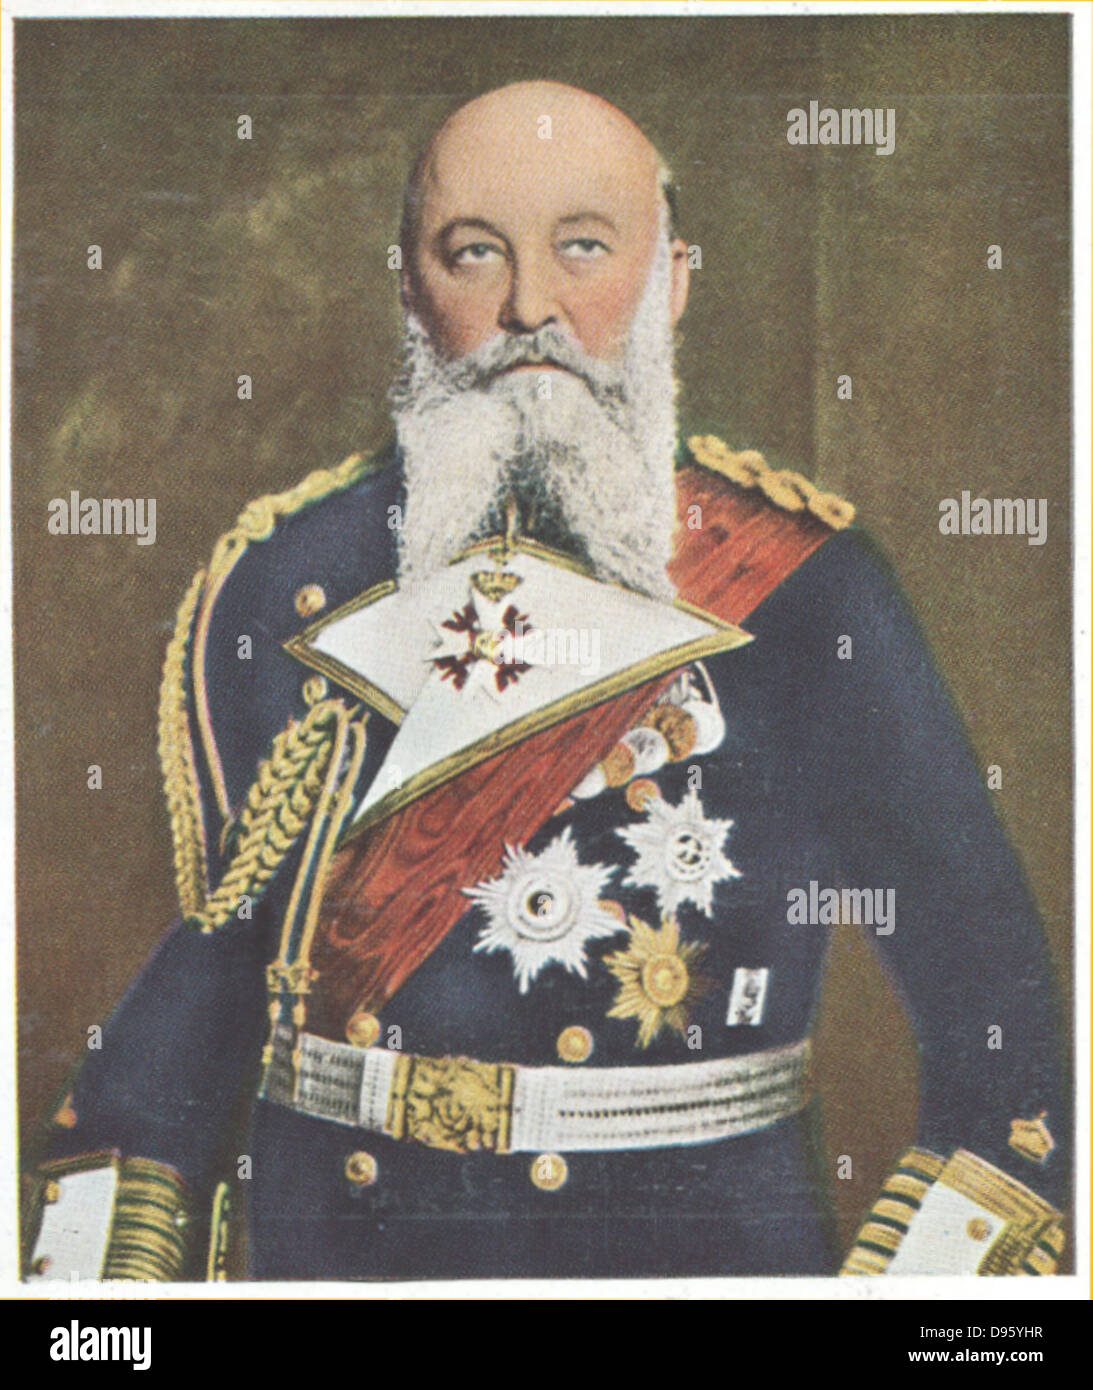 Alfred Friedrich von Turpitz (1849-1930), commandant de la marine allemande. Nommé secrétaire d'état de la Marine impériale allemande en 1897, il est responsable de la construction d'une flotte capable de défier la Marine britannique. Banque D'Images